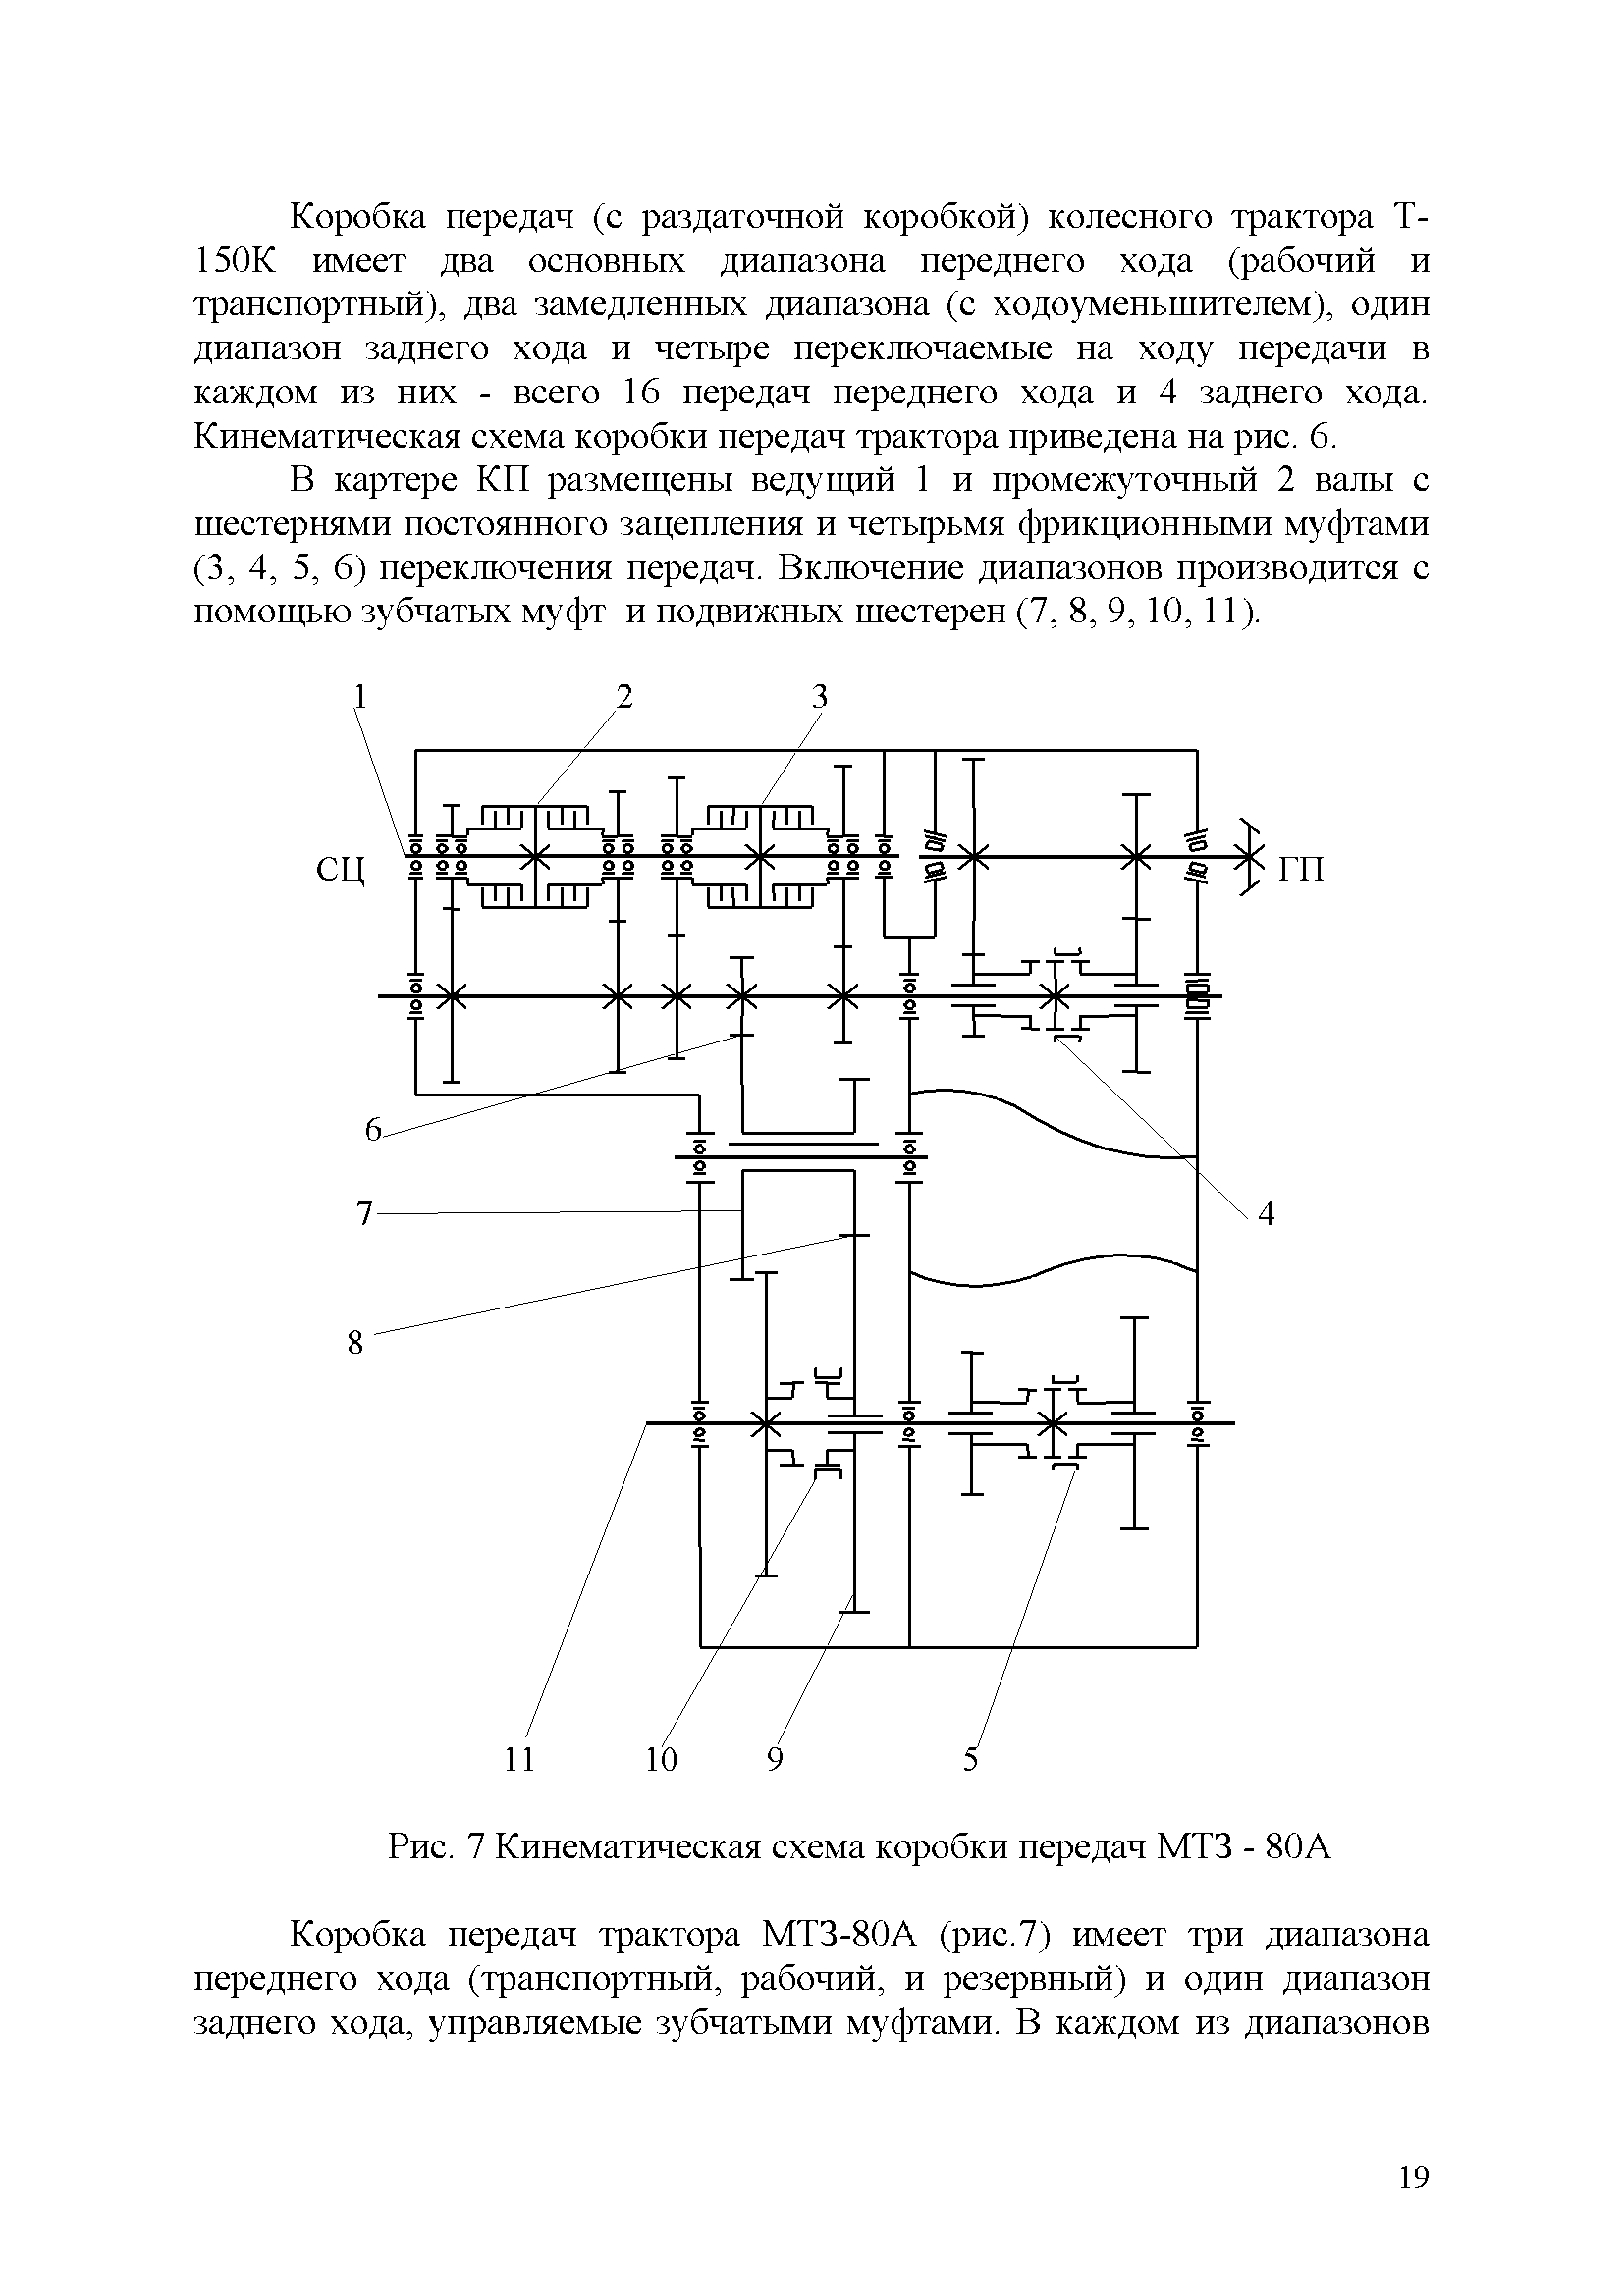 Кинематическая схема коробки передач